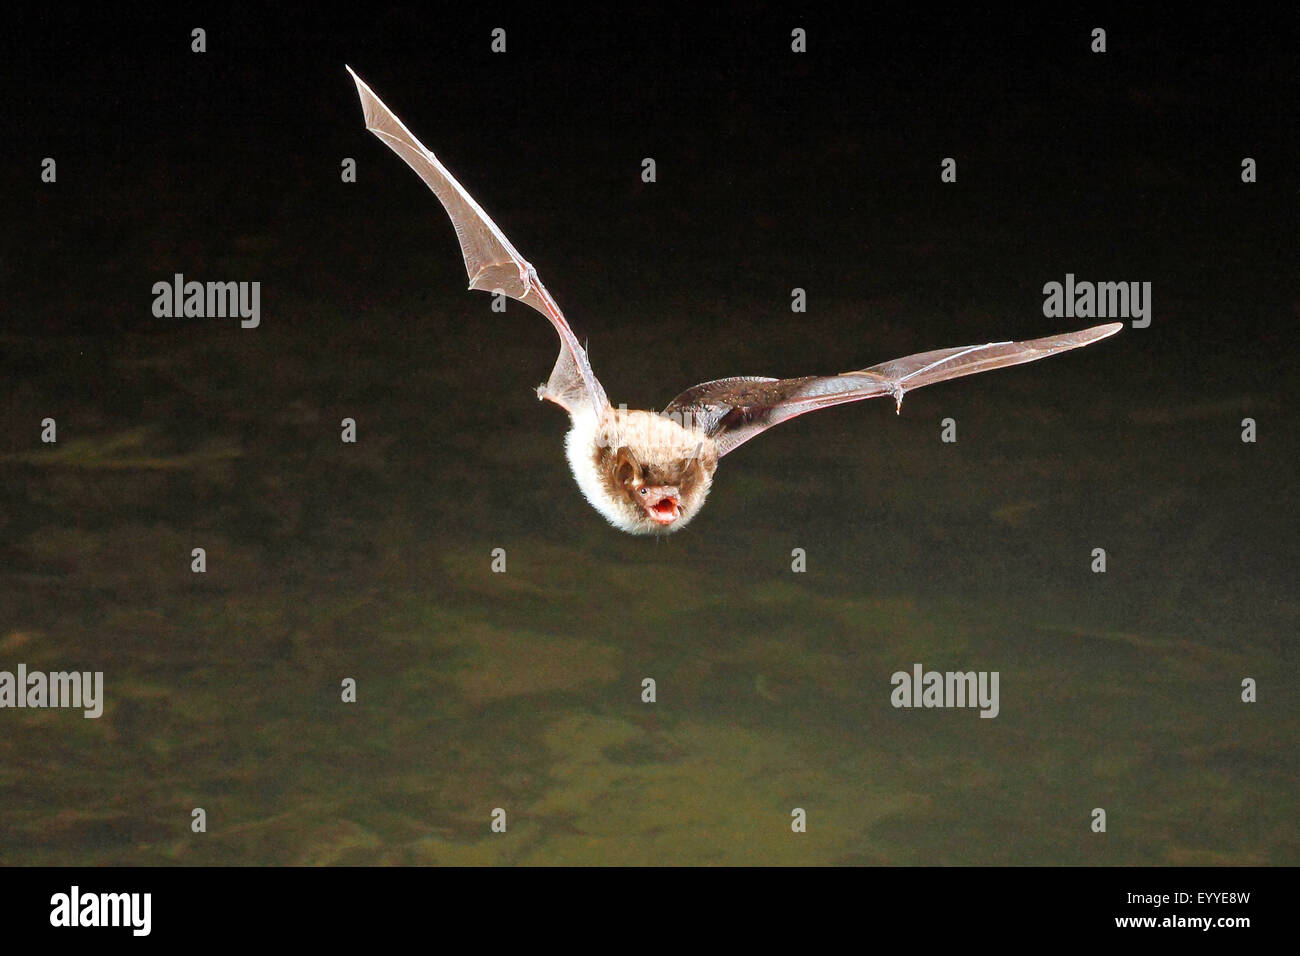 Daubenton's bat (Myotis daubentoni), hunting in flight, Germany Stock Photo